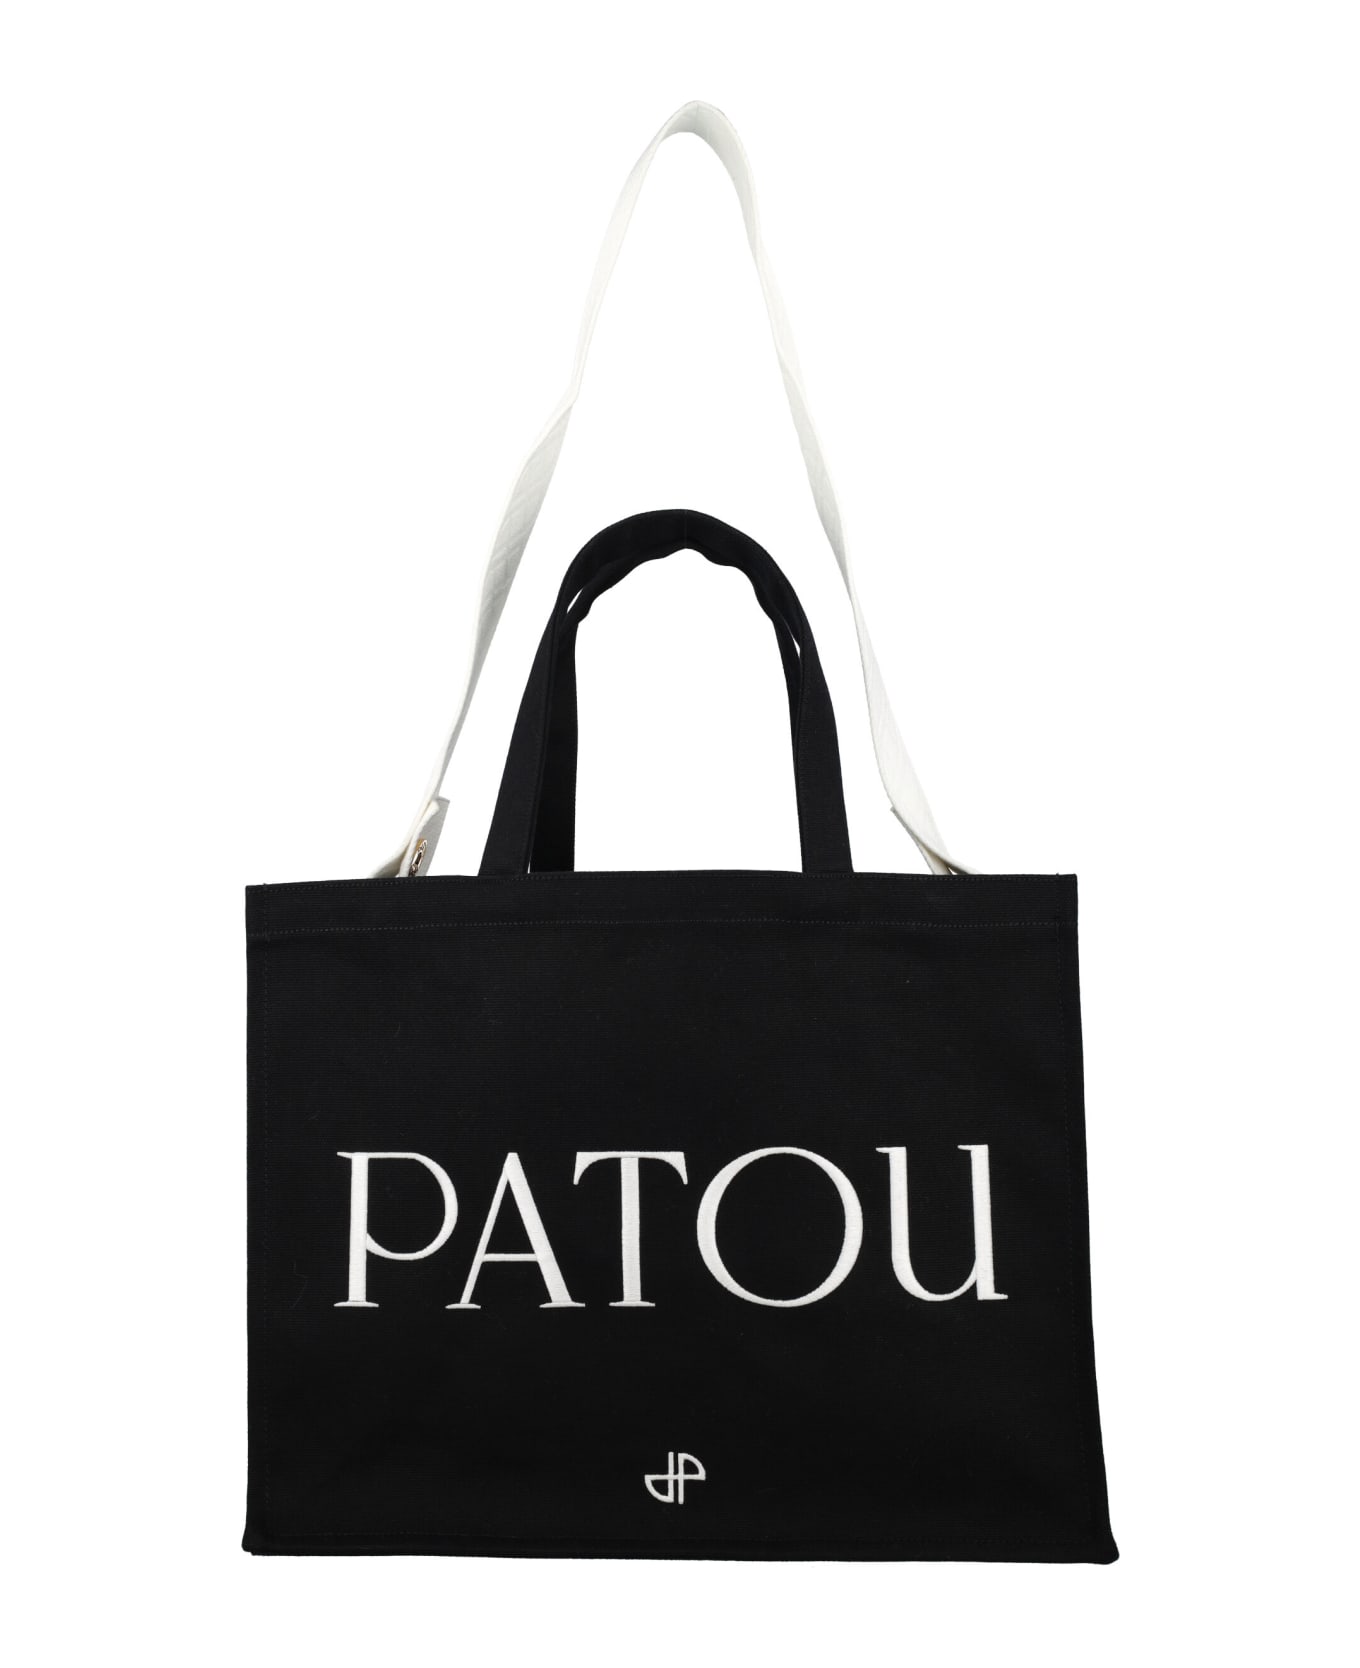 Patou Logo Tote - BLACK トートバッグ